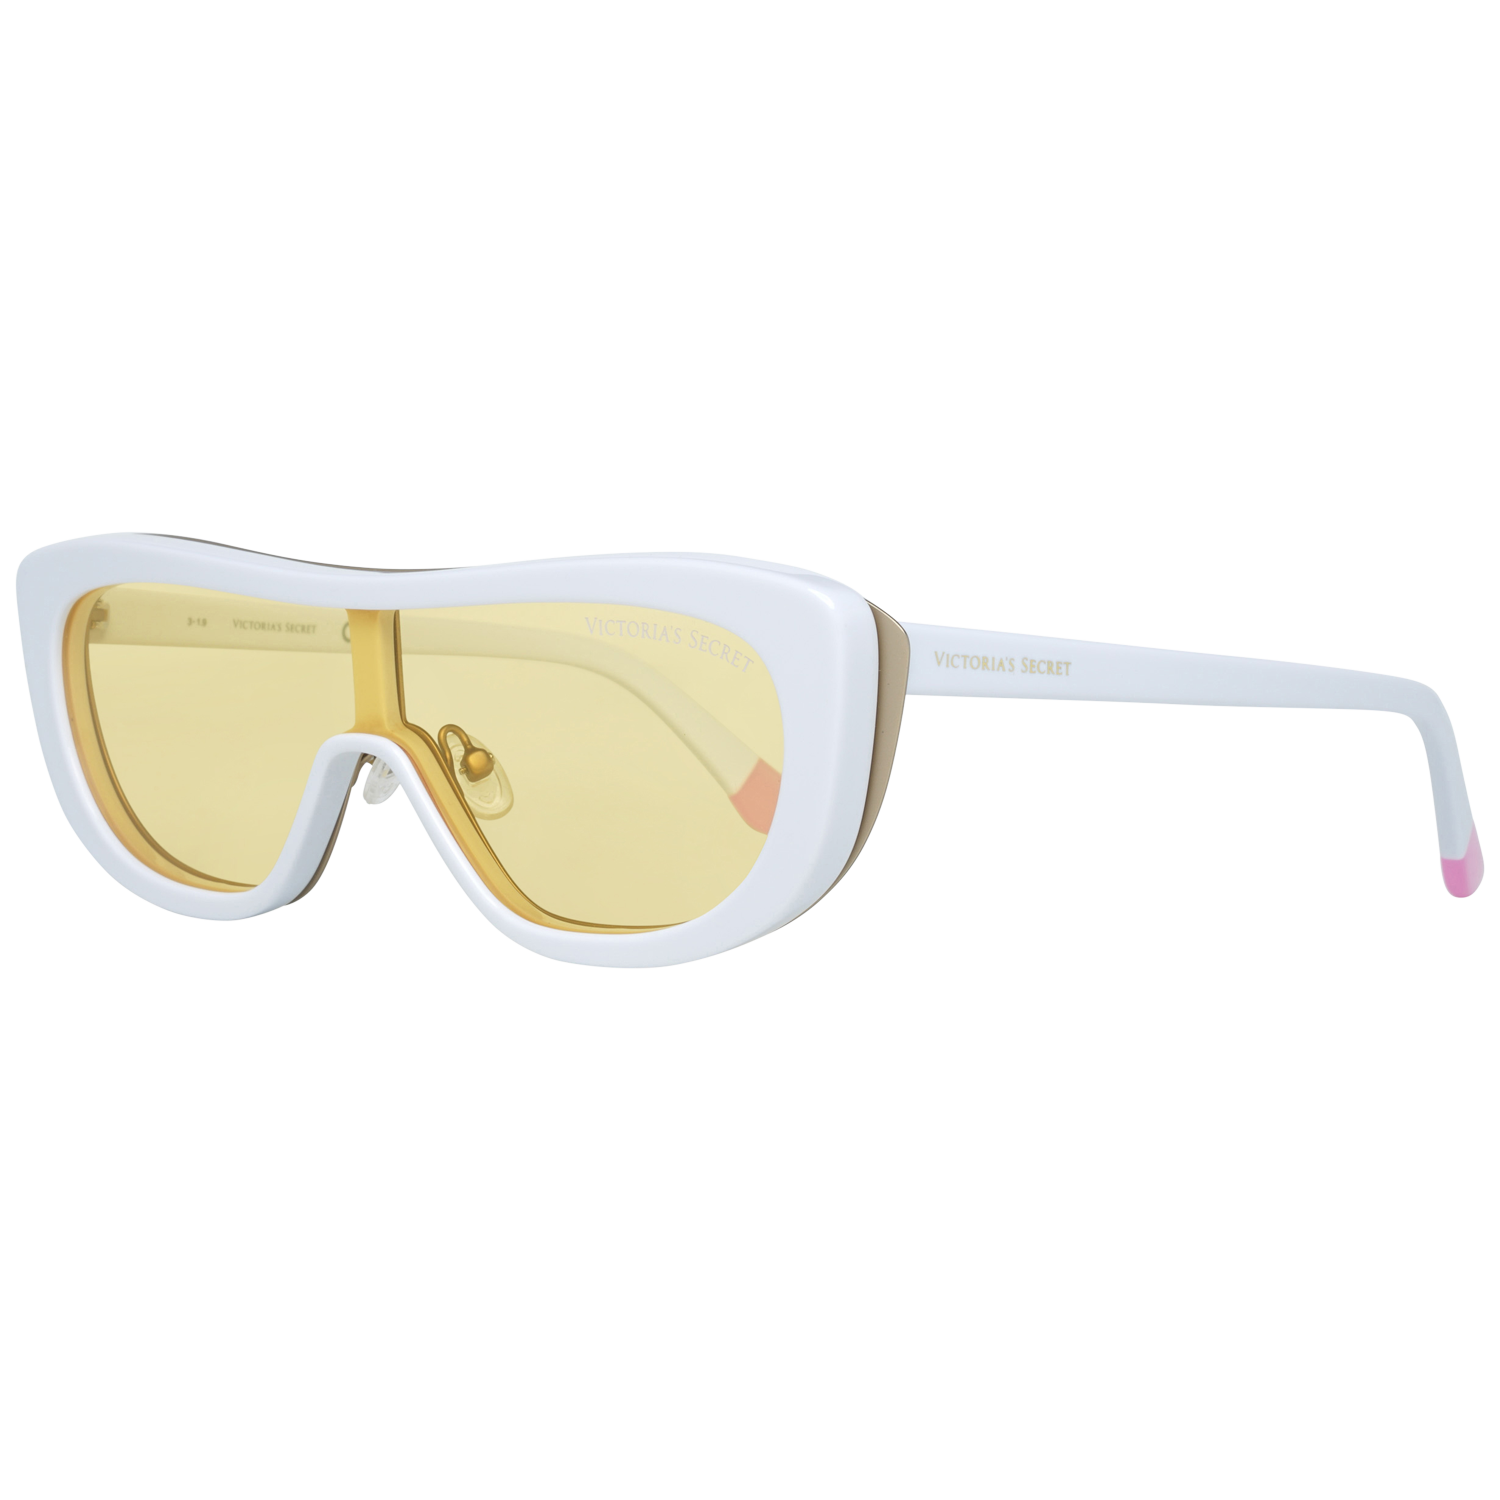 Victoria's Secret Sunglasses VS0011 25G 128 White